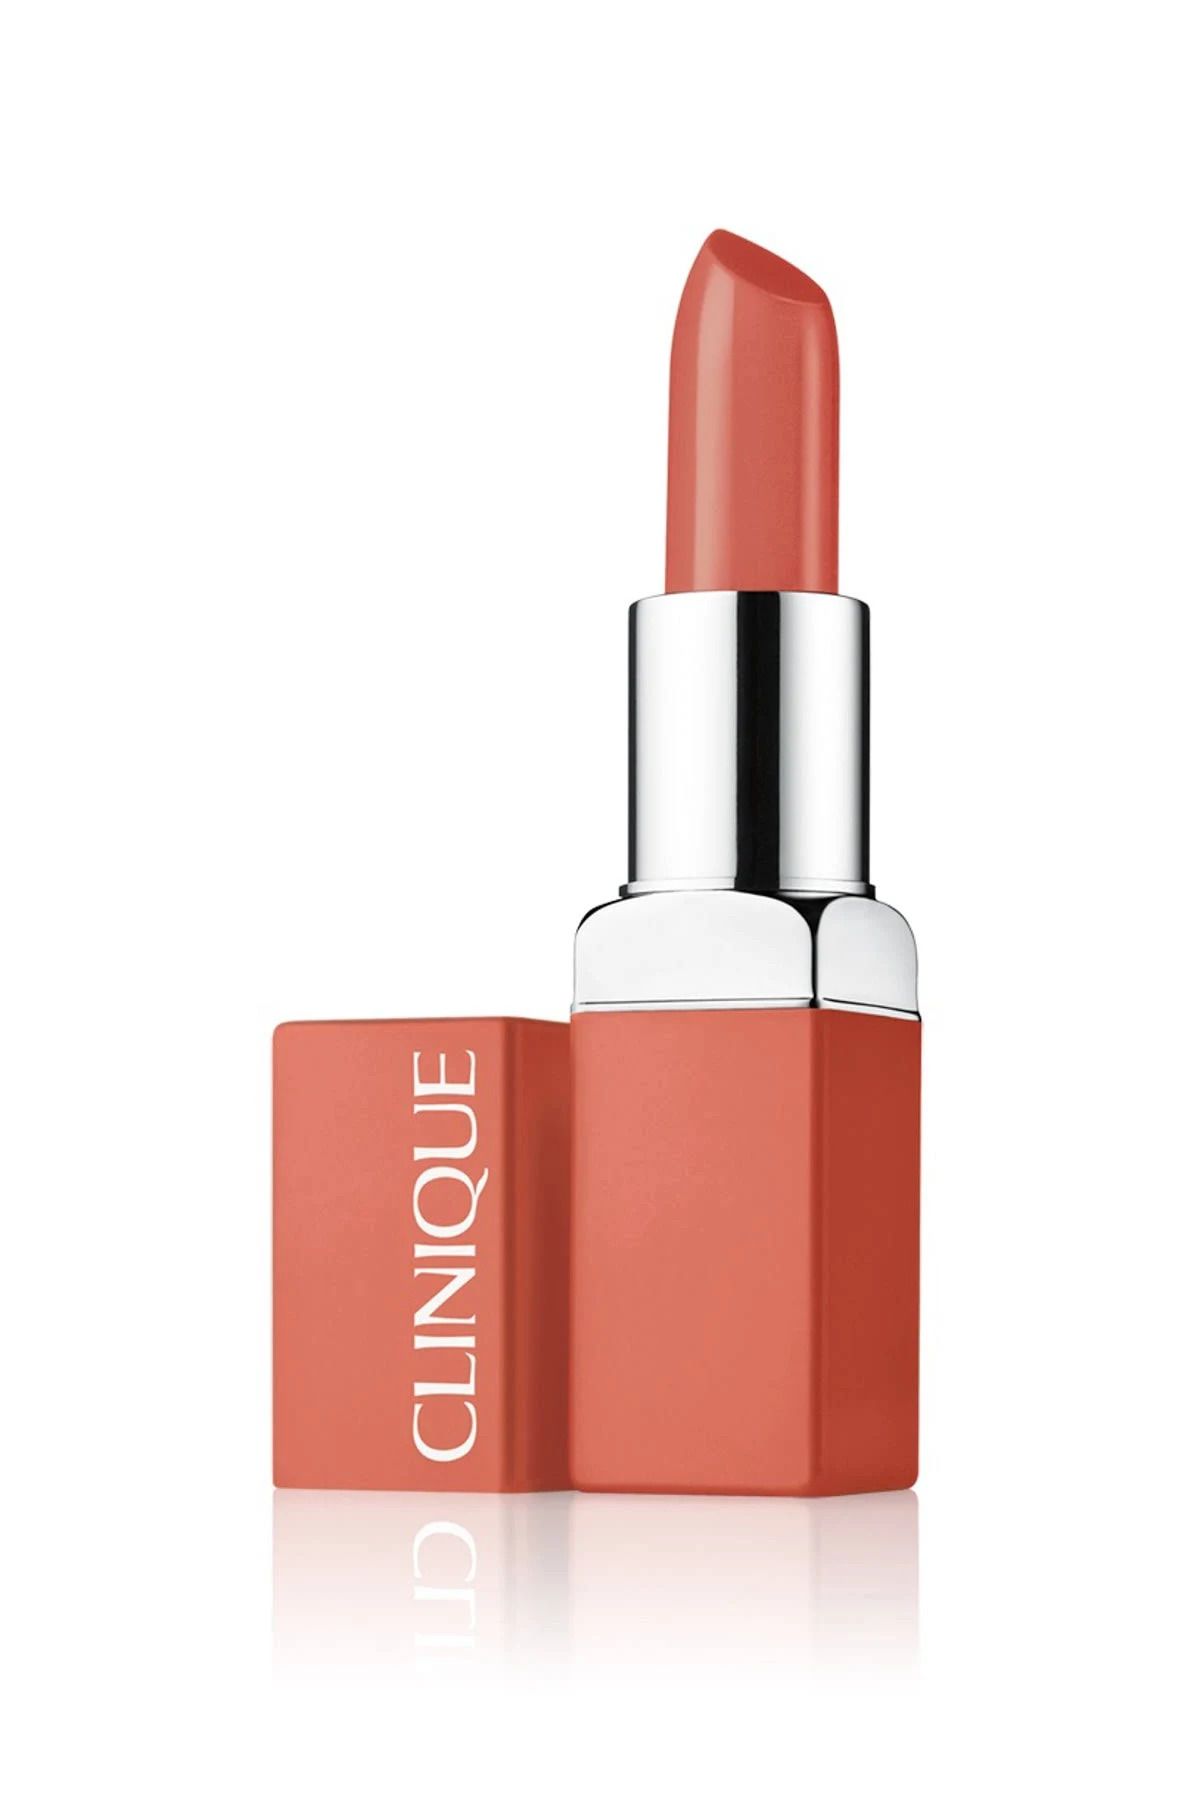 Clinique Nude Ruj - Even Better Pop Lipstick 05 Camellia 192333012321